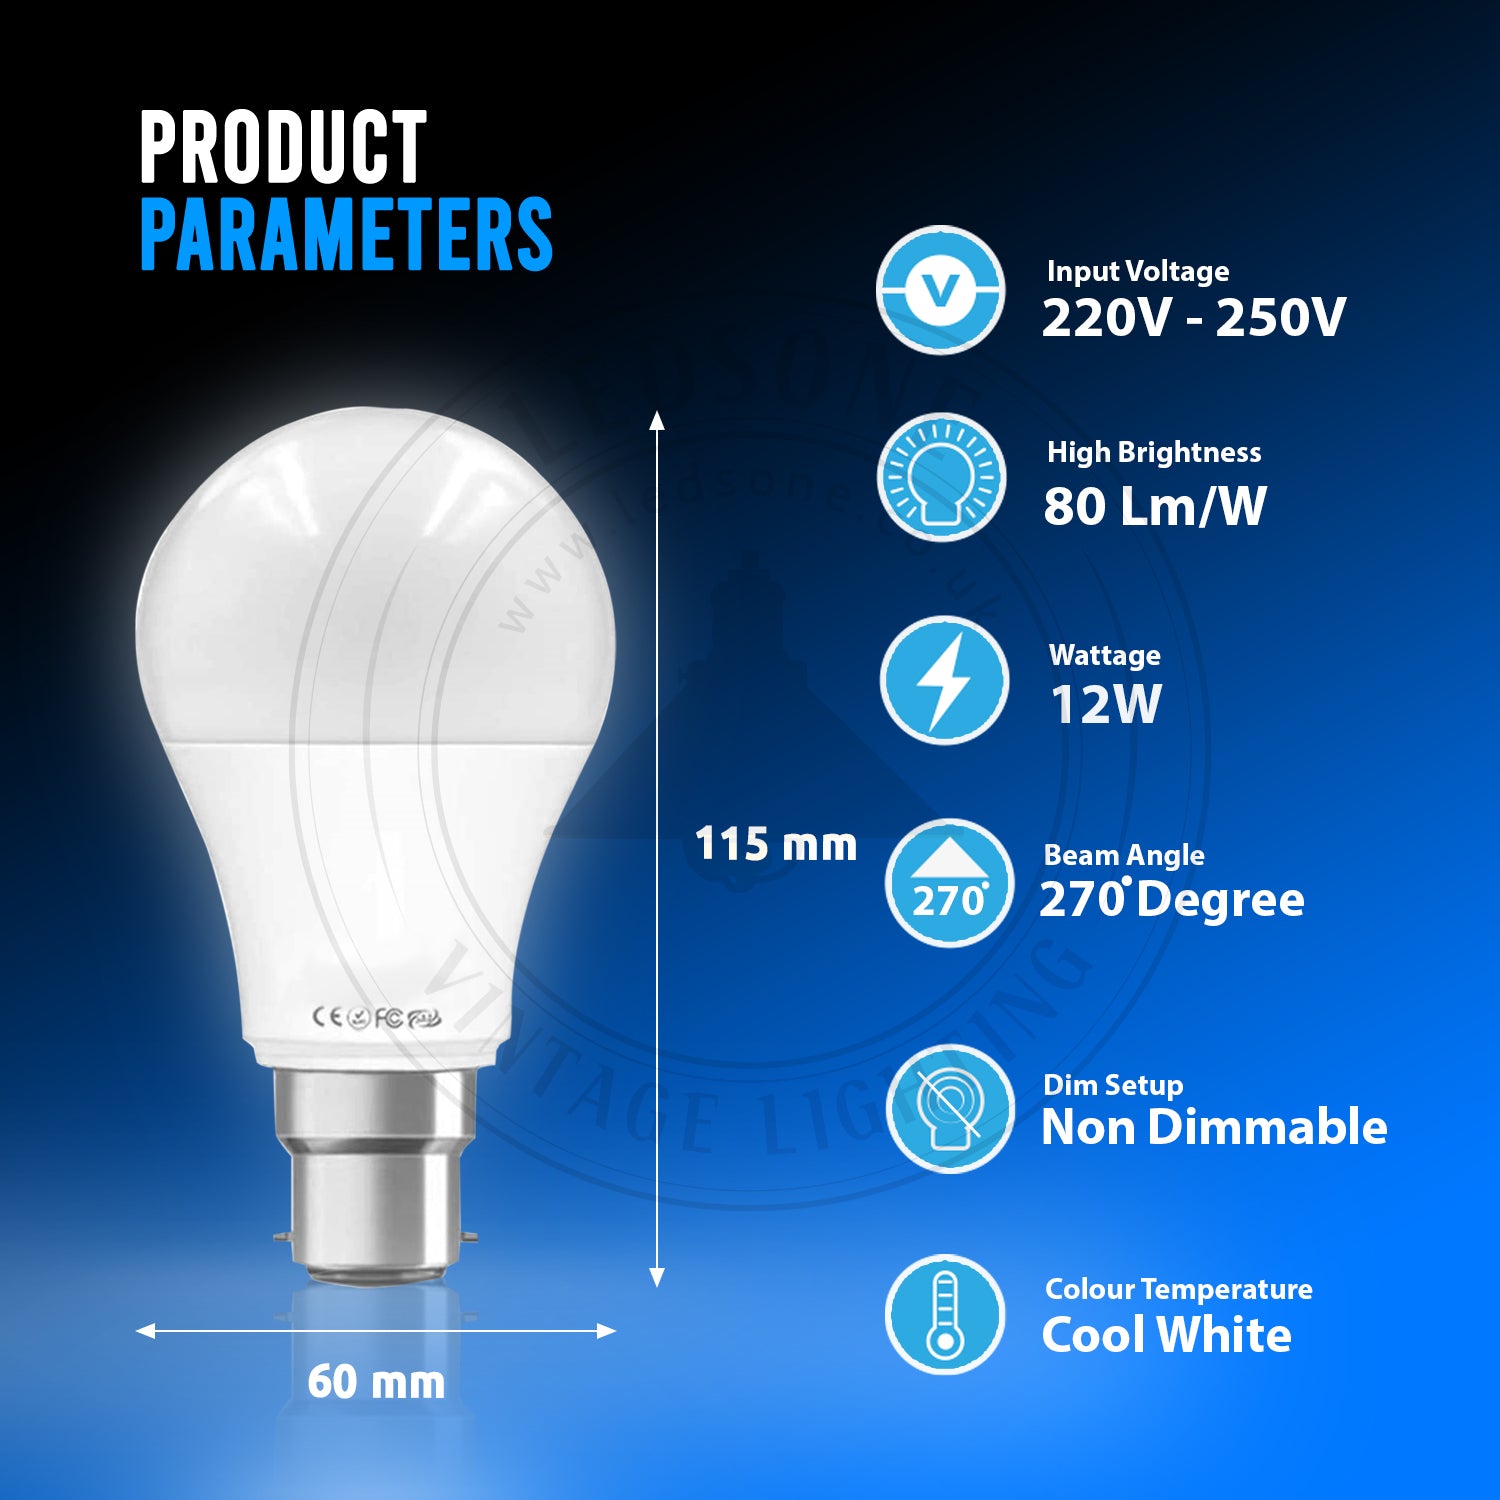 12 W B22 Schraub-LED-Licht GLS-Lampen, energiesparende Edison Cool White 6000 K nicht dimmbare Lichter